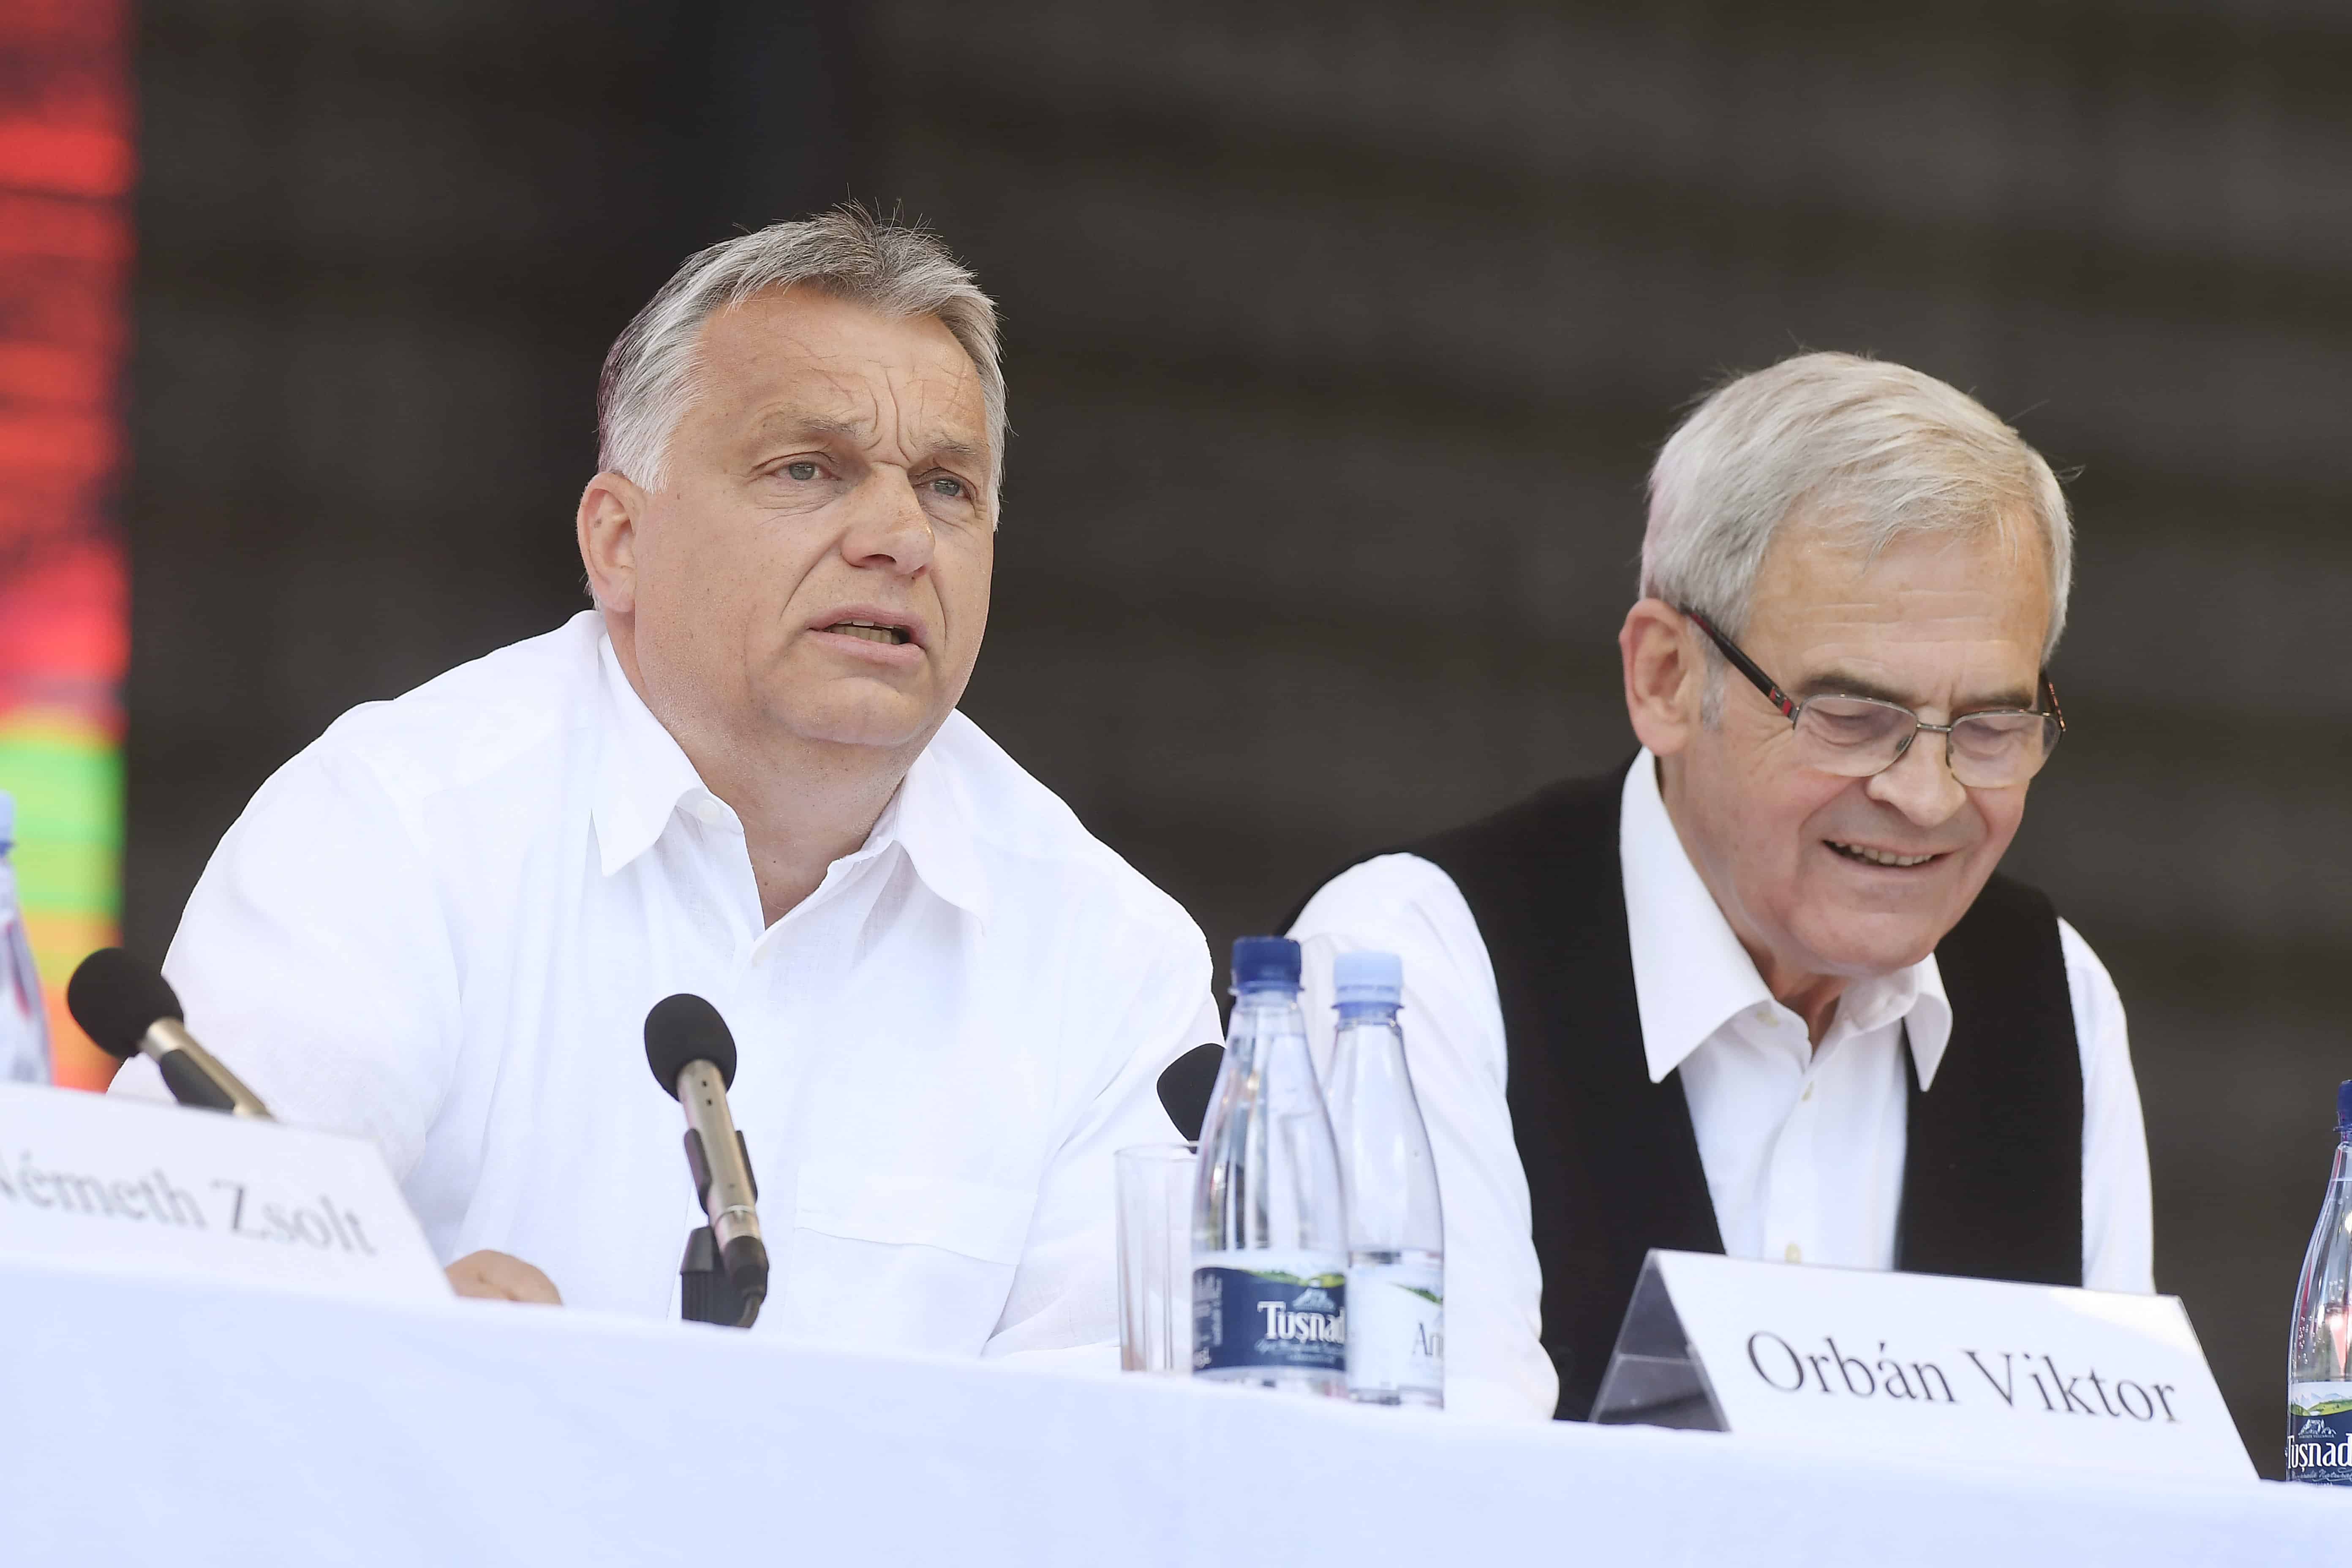 Tusvanyos-ग्रीष्म-विश्वविद्यालय-PM-Orbán